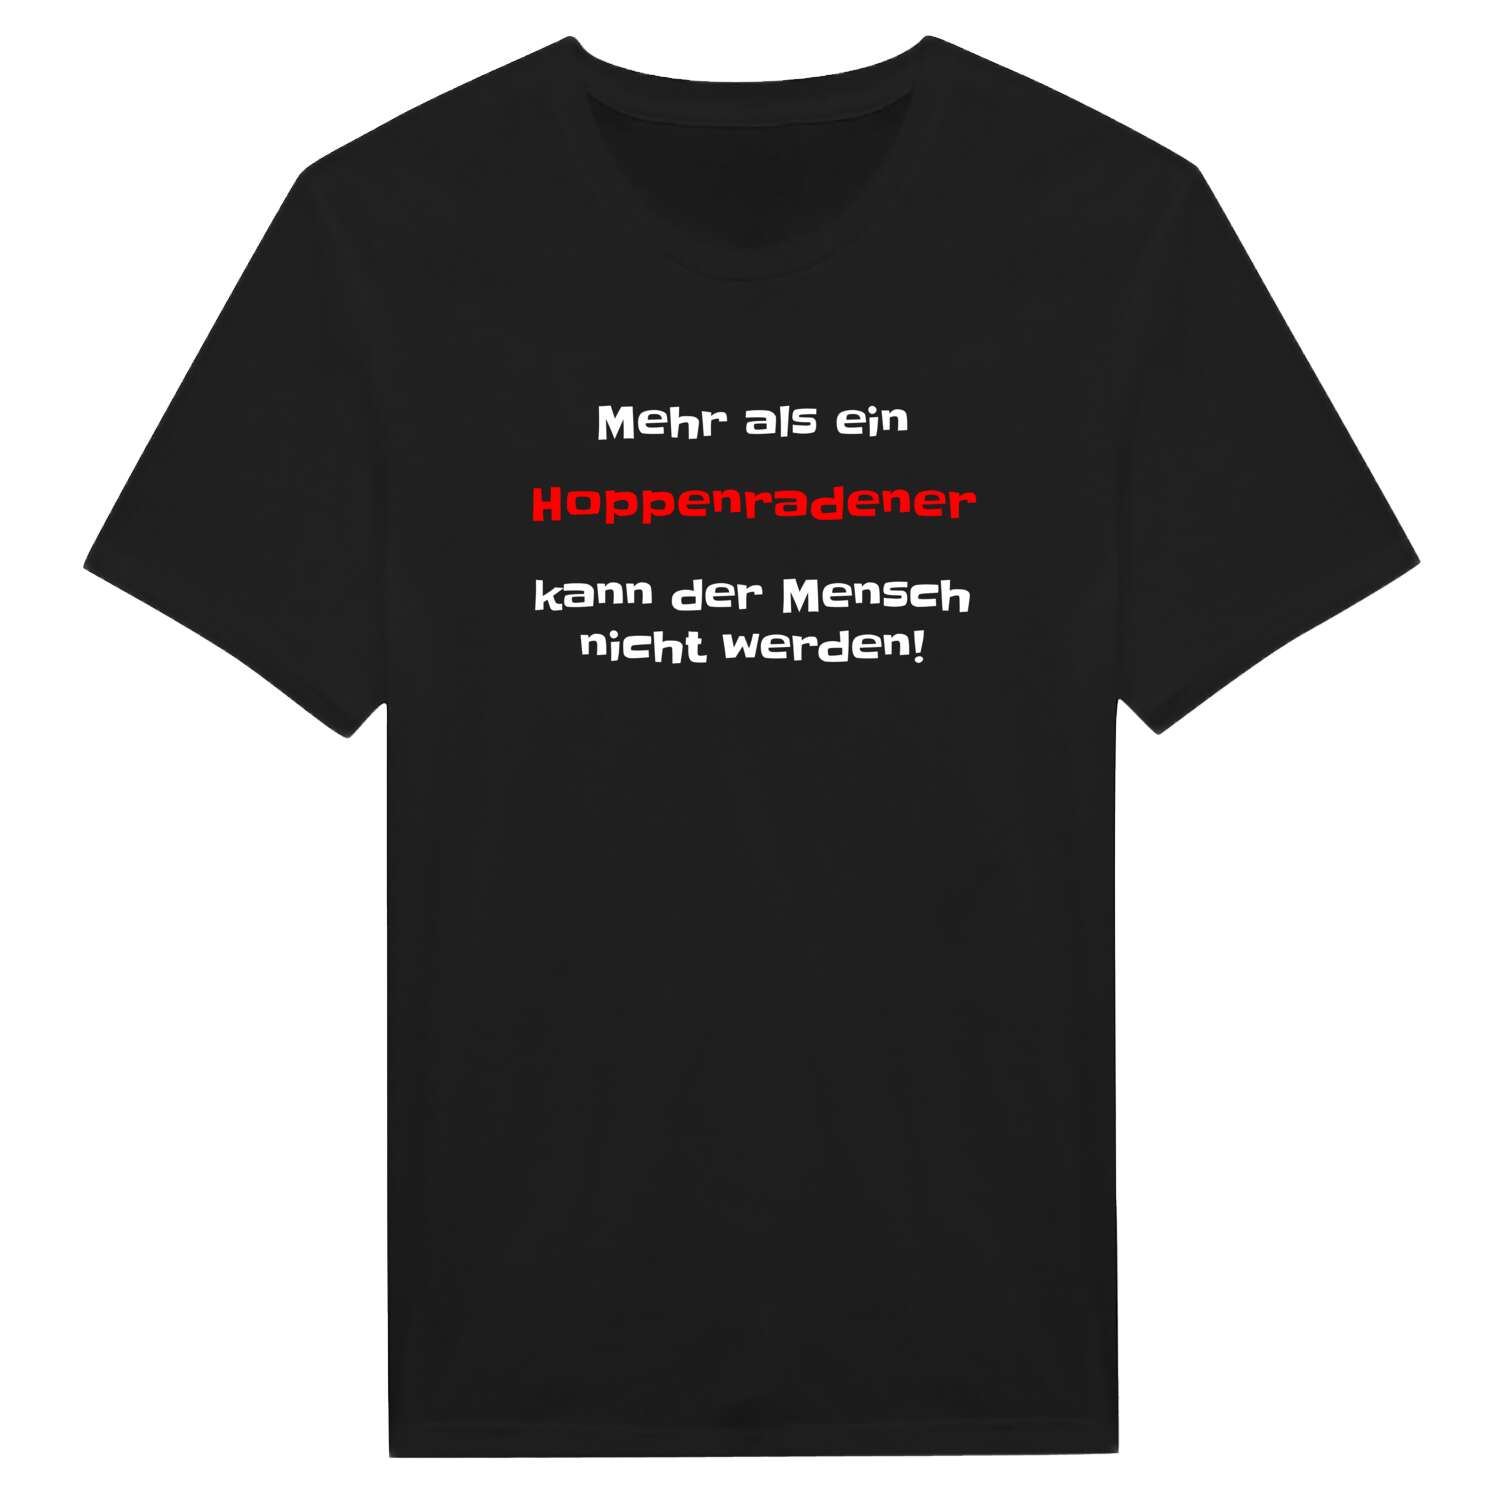 Hoppenrade T-Shirt »Mehr als ein«